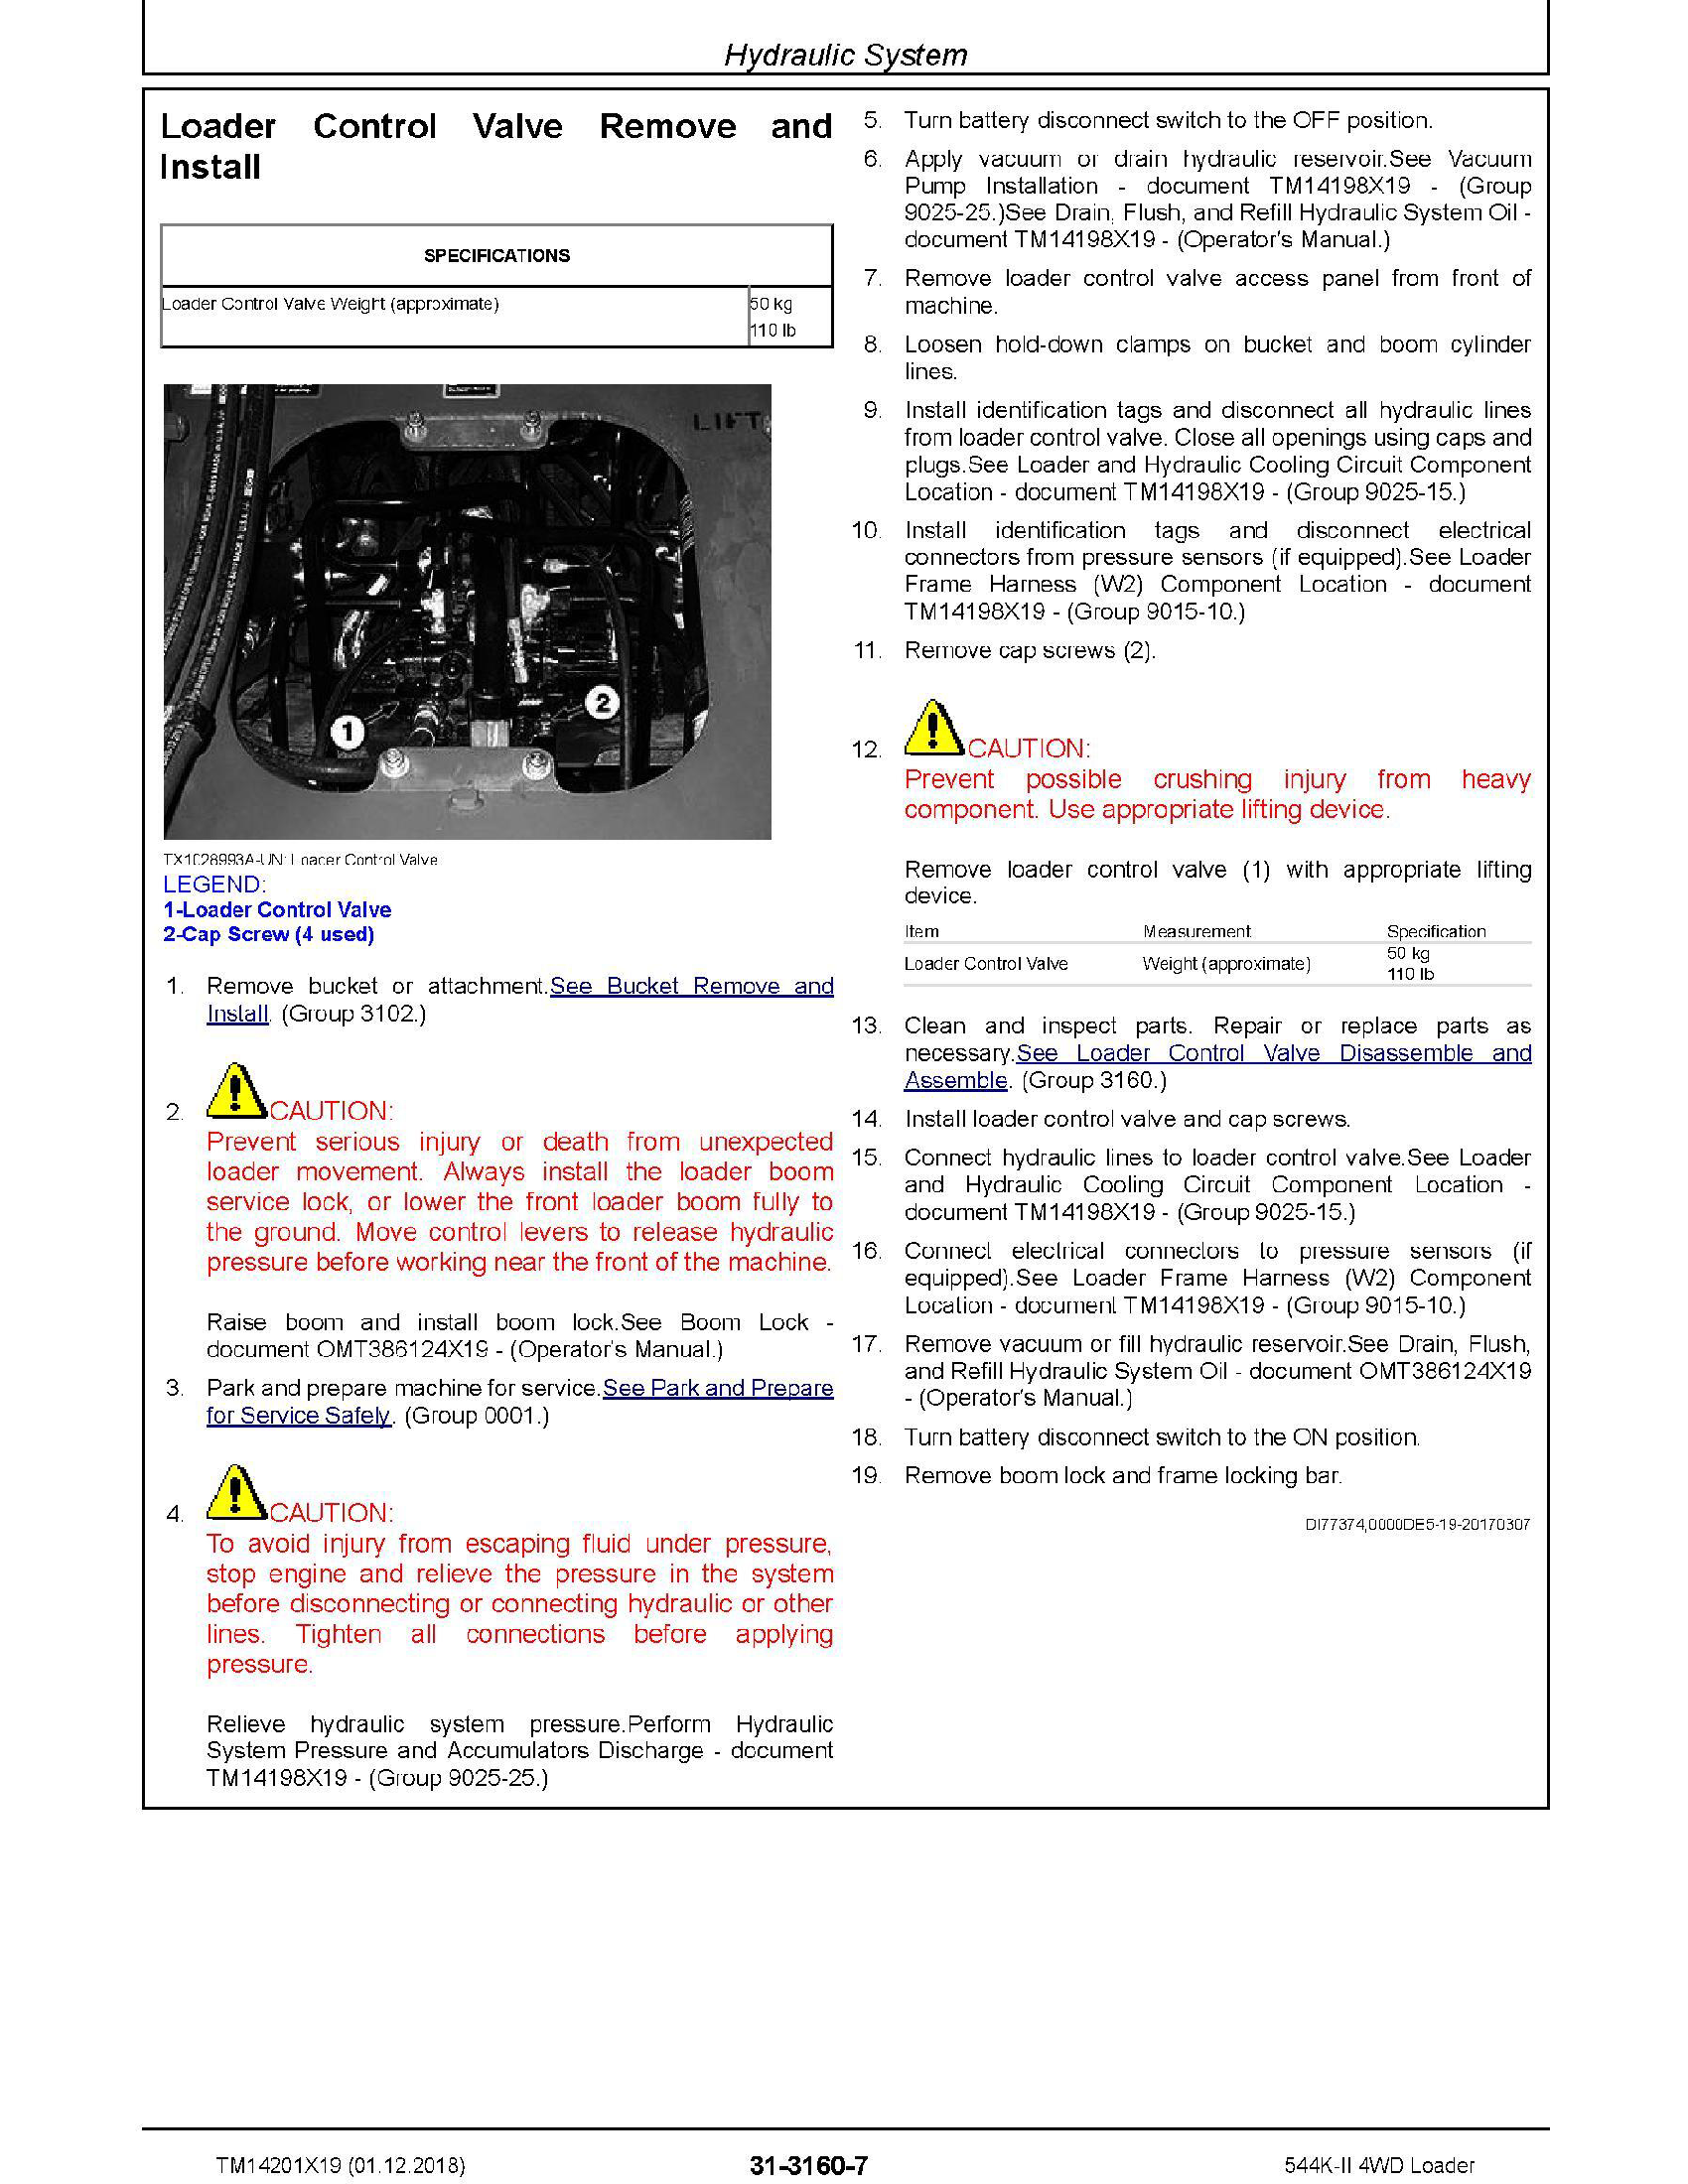 John Deere 410J manual pdf